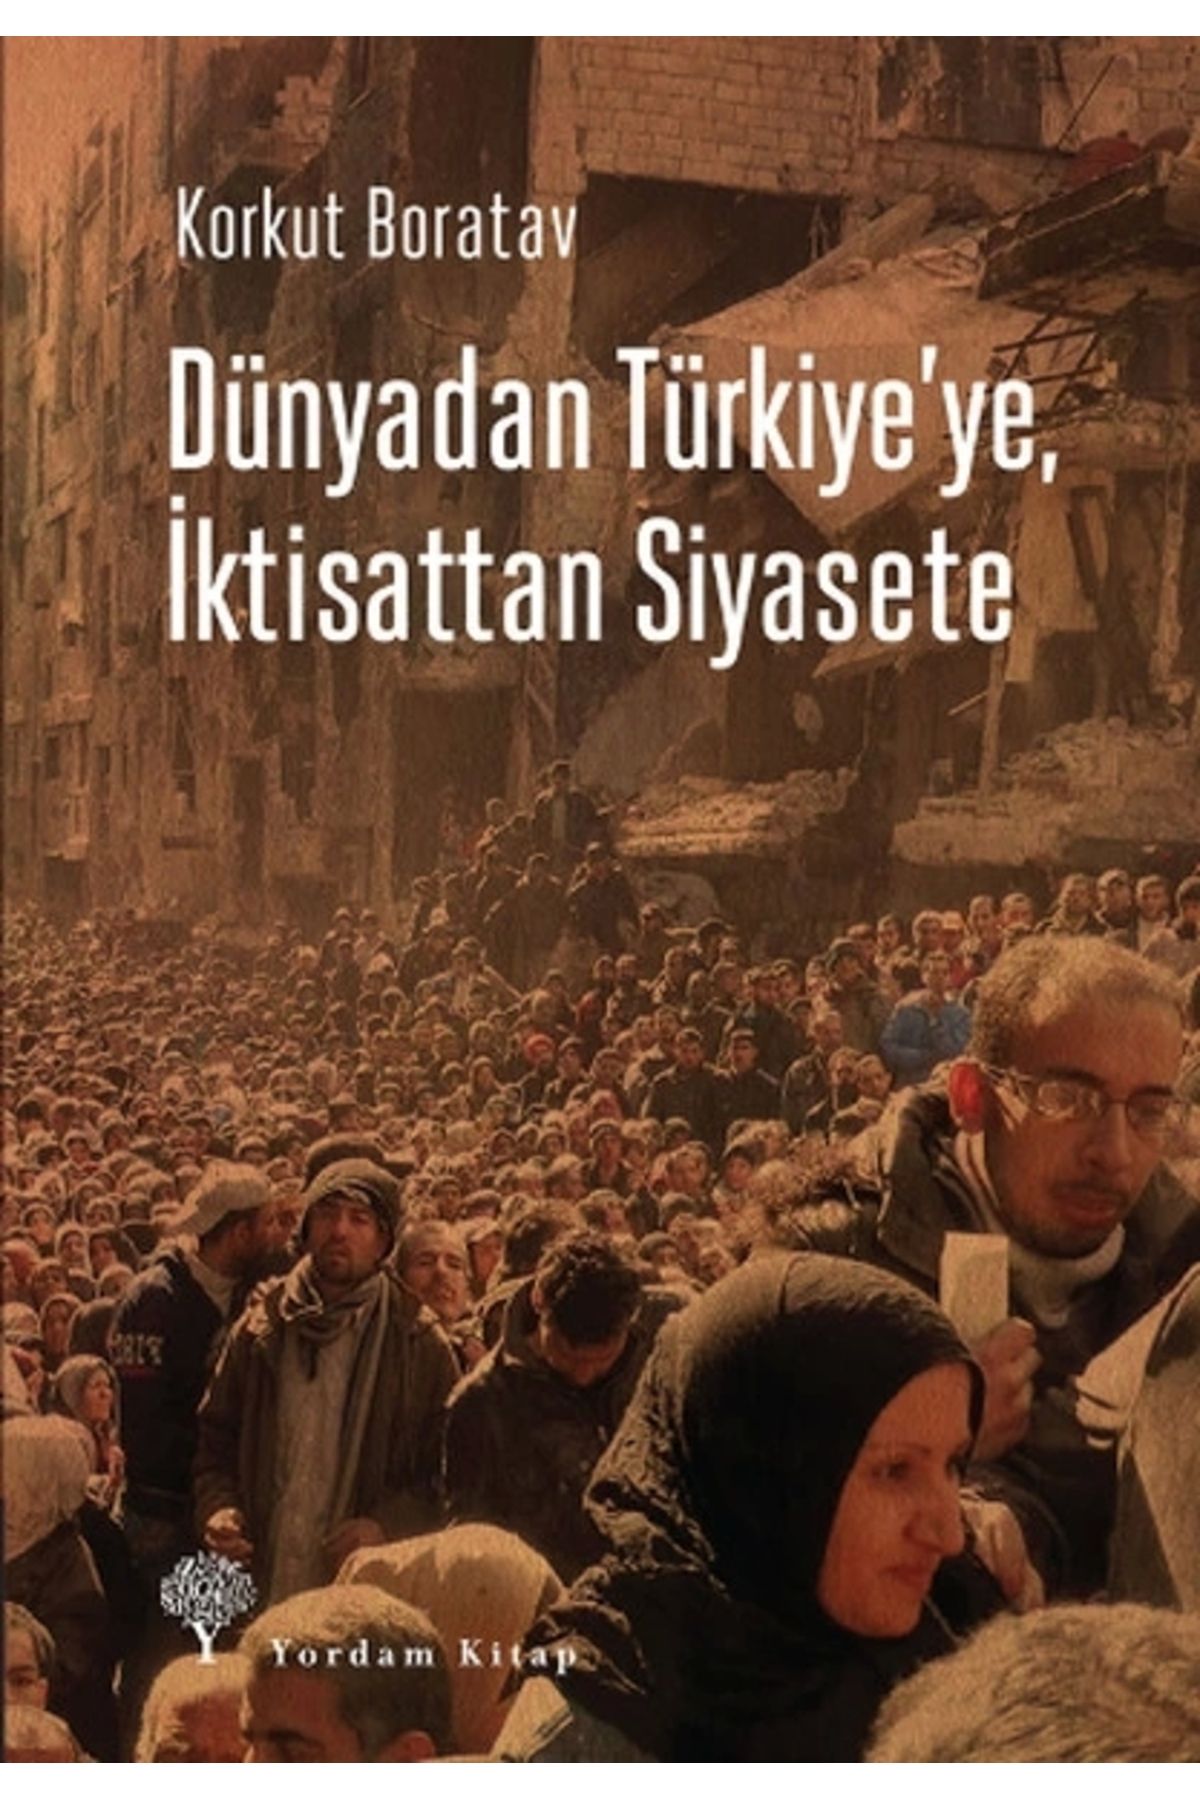 Yordam Kitap Dünyadan Türkiye'ye, Iktisattan Siyasete